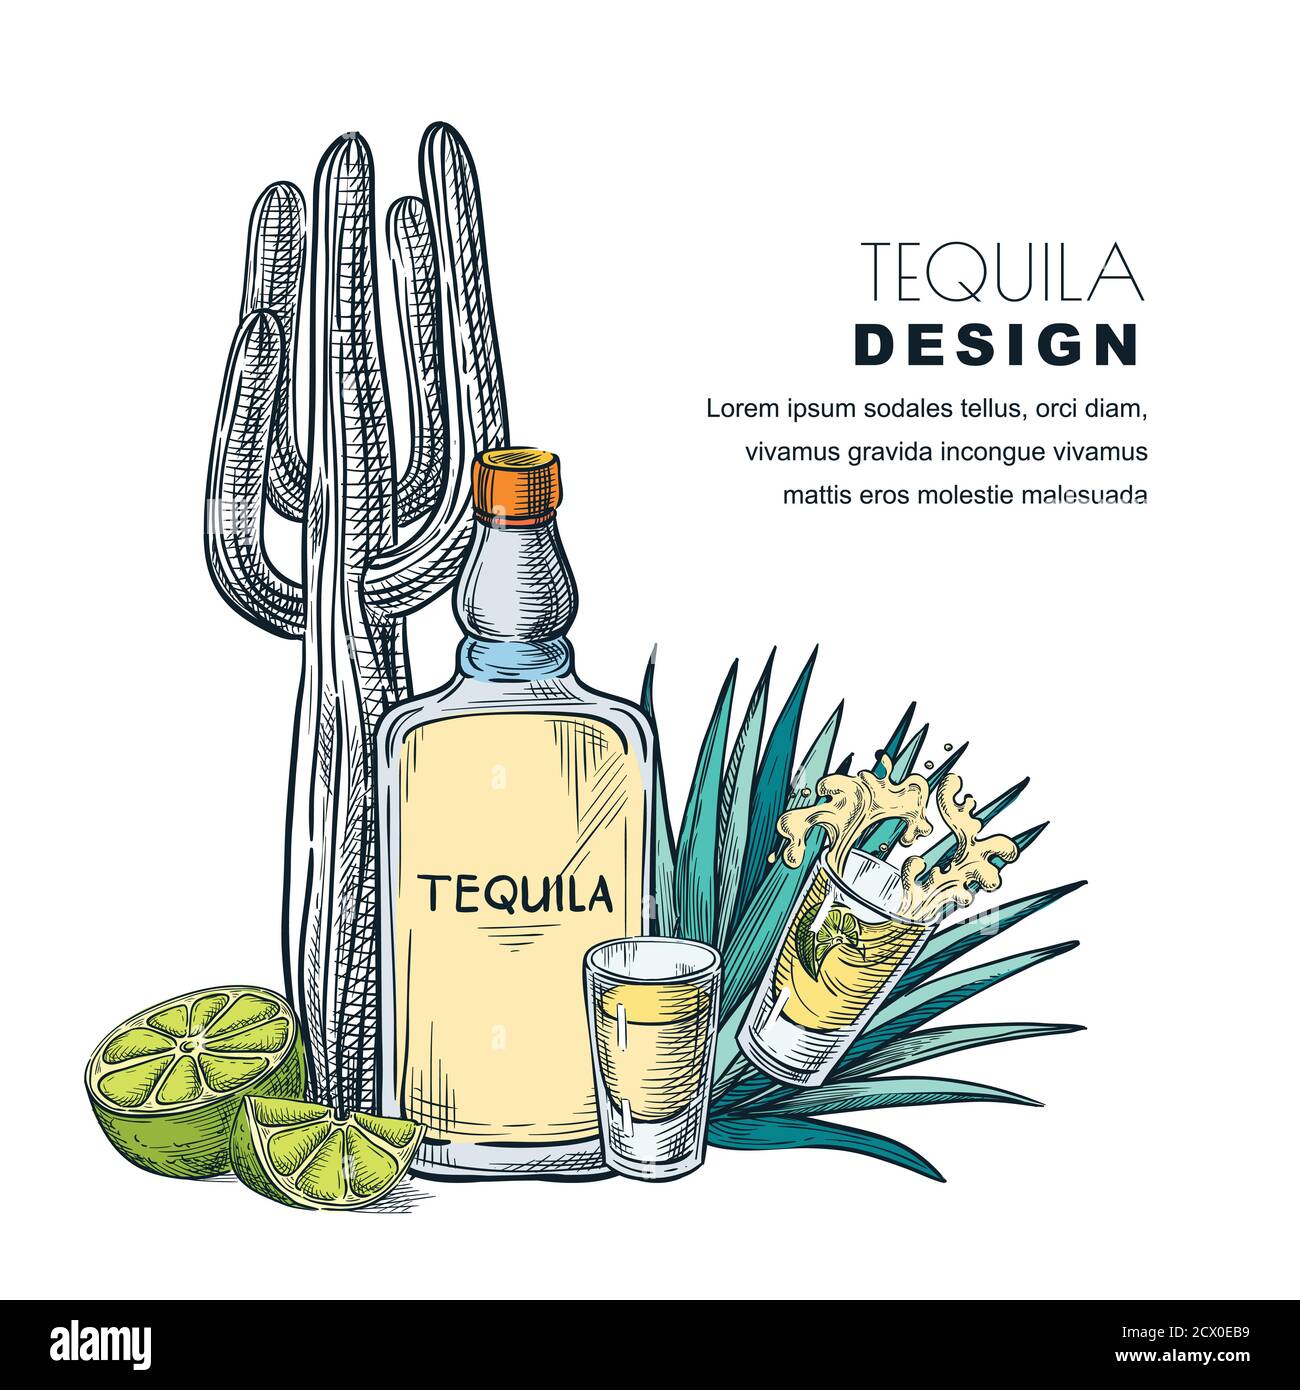 Tequila Skizzenvektor Illustration. Bar-Menü, Etikett oder Verpackung Design. Flasche, Schnapsglas, Kaktus, Agave isoliert auf weißem Hintergrund. Stock Vektor